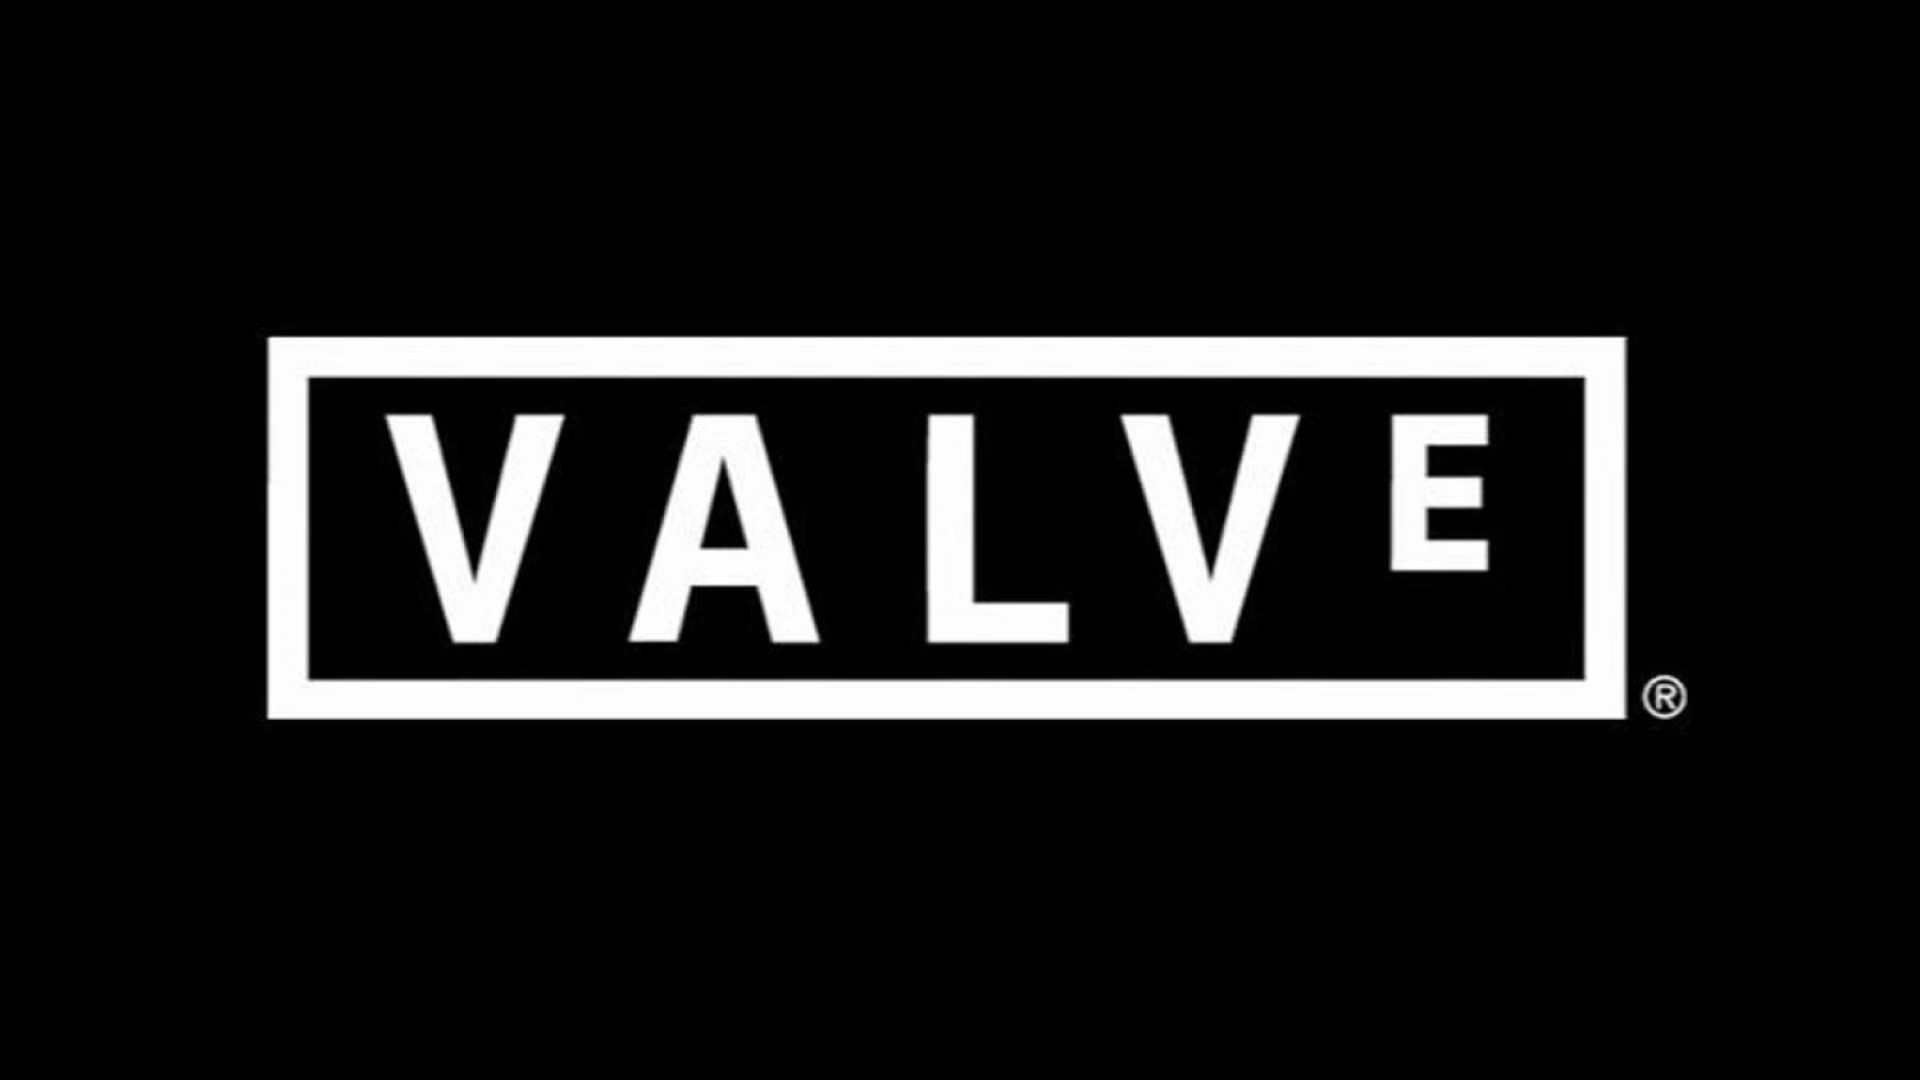 احتمال ساخت کنسول دستی توسط Valve